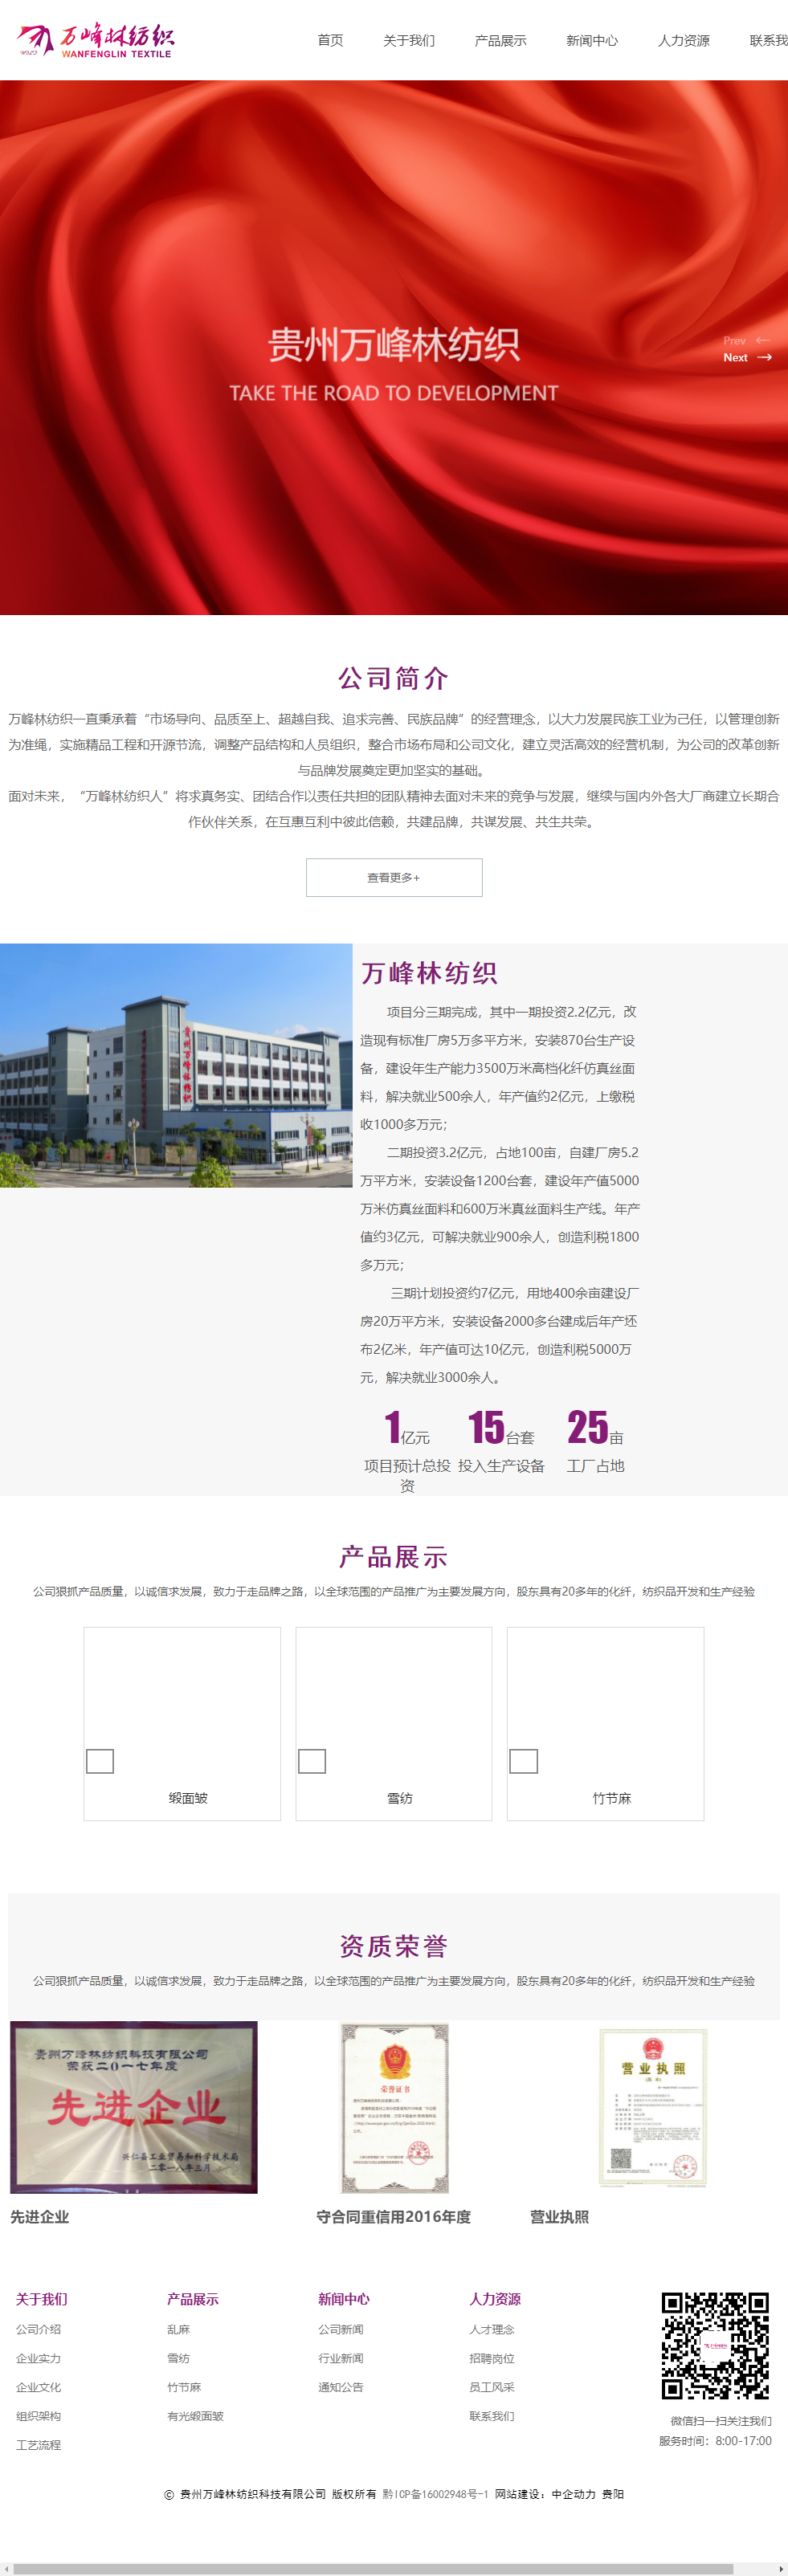 贵州万峰林纺织科技有限公司网站案例